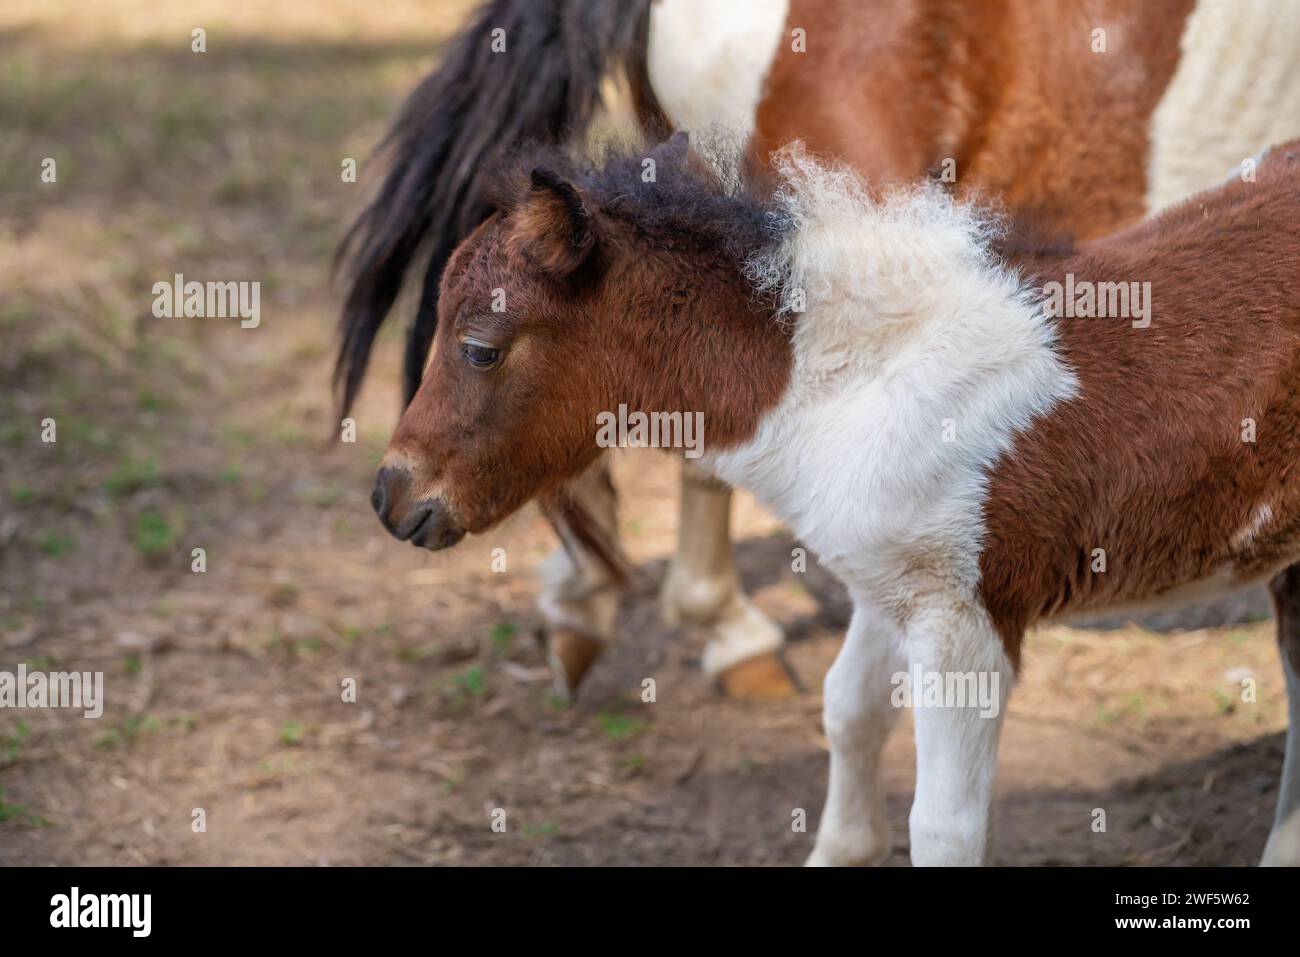 Young Miniature Horse (Equus ferus caballus) Stock Photo